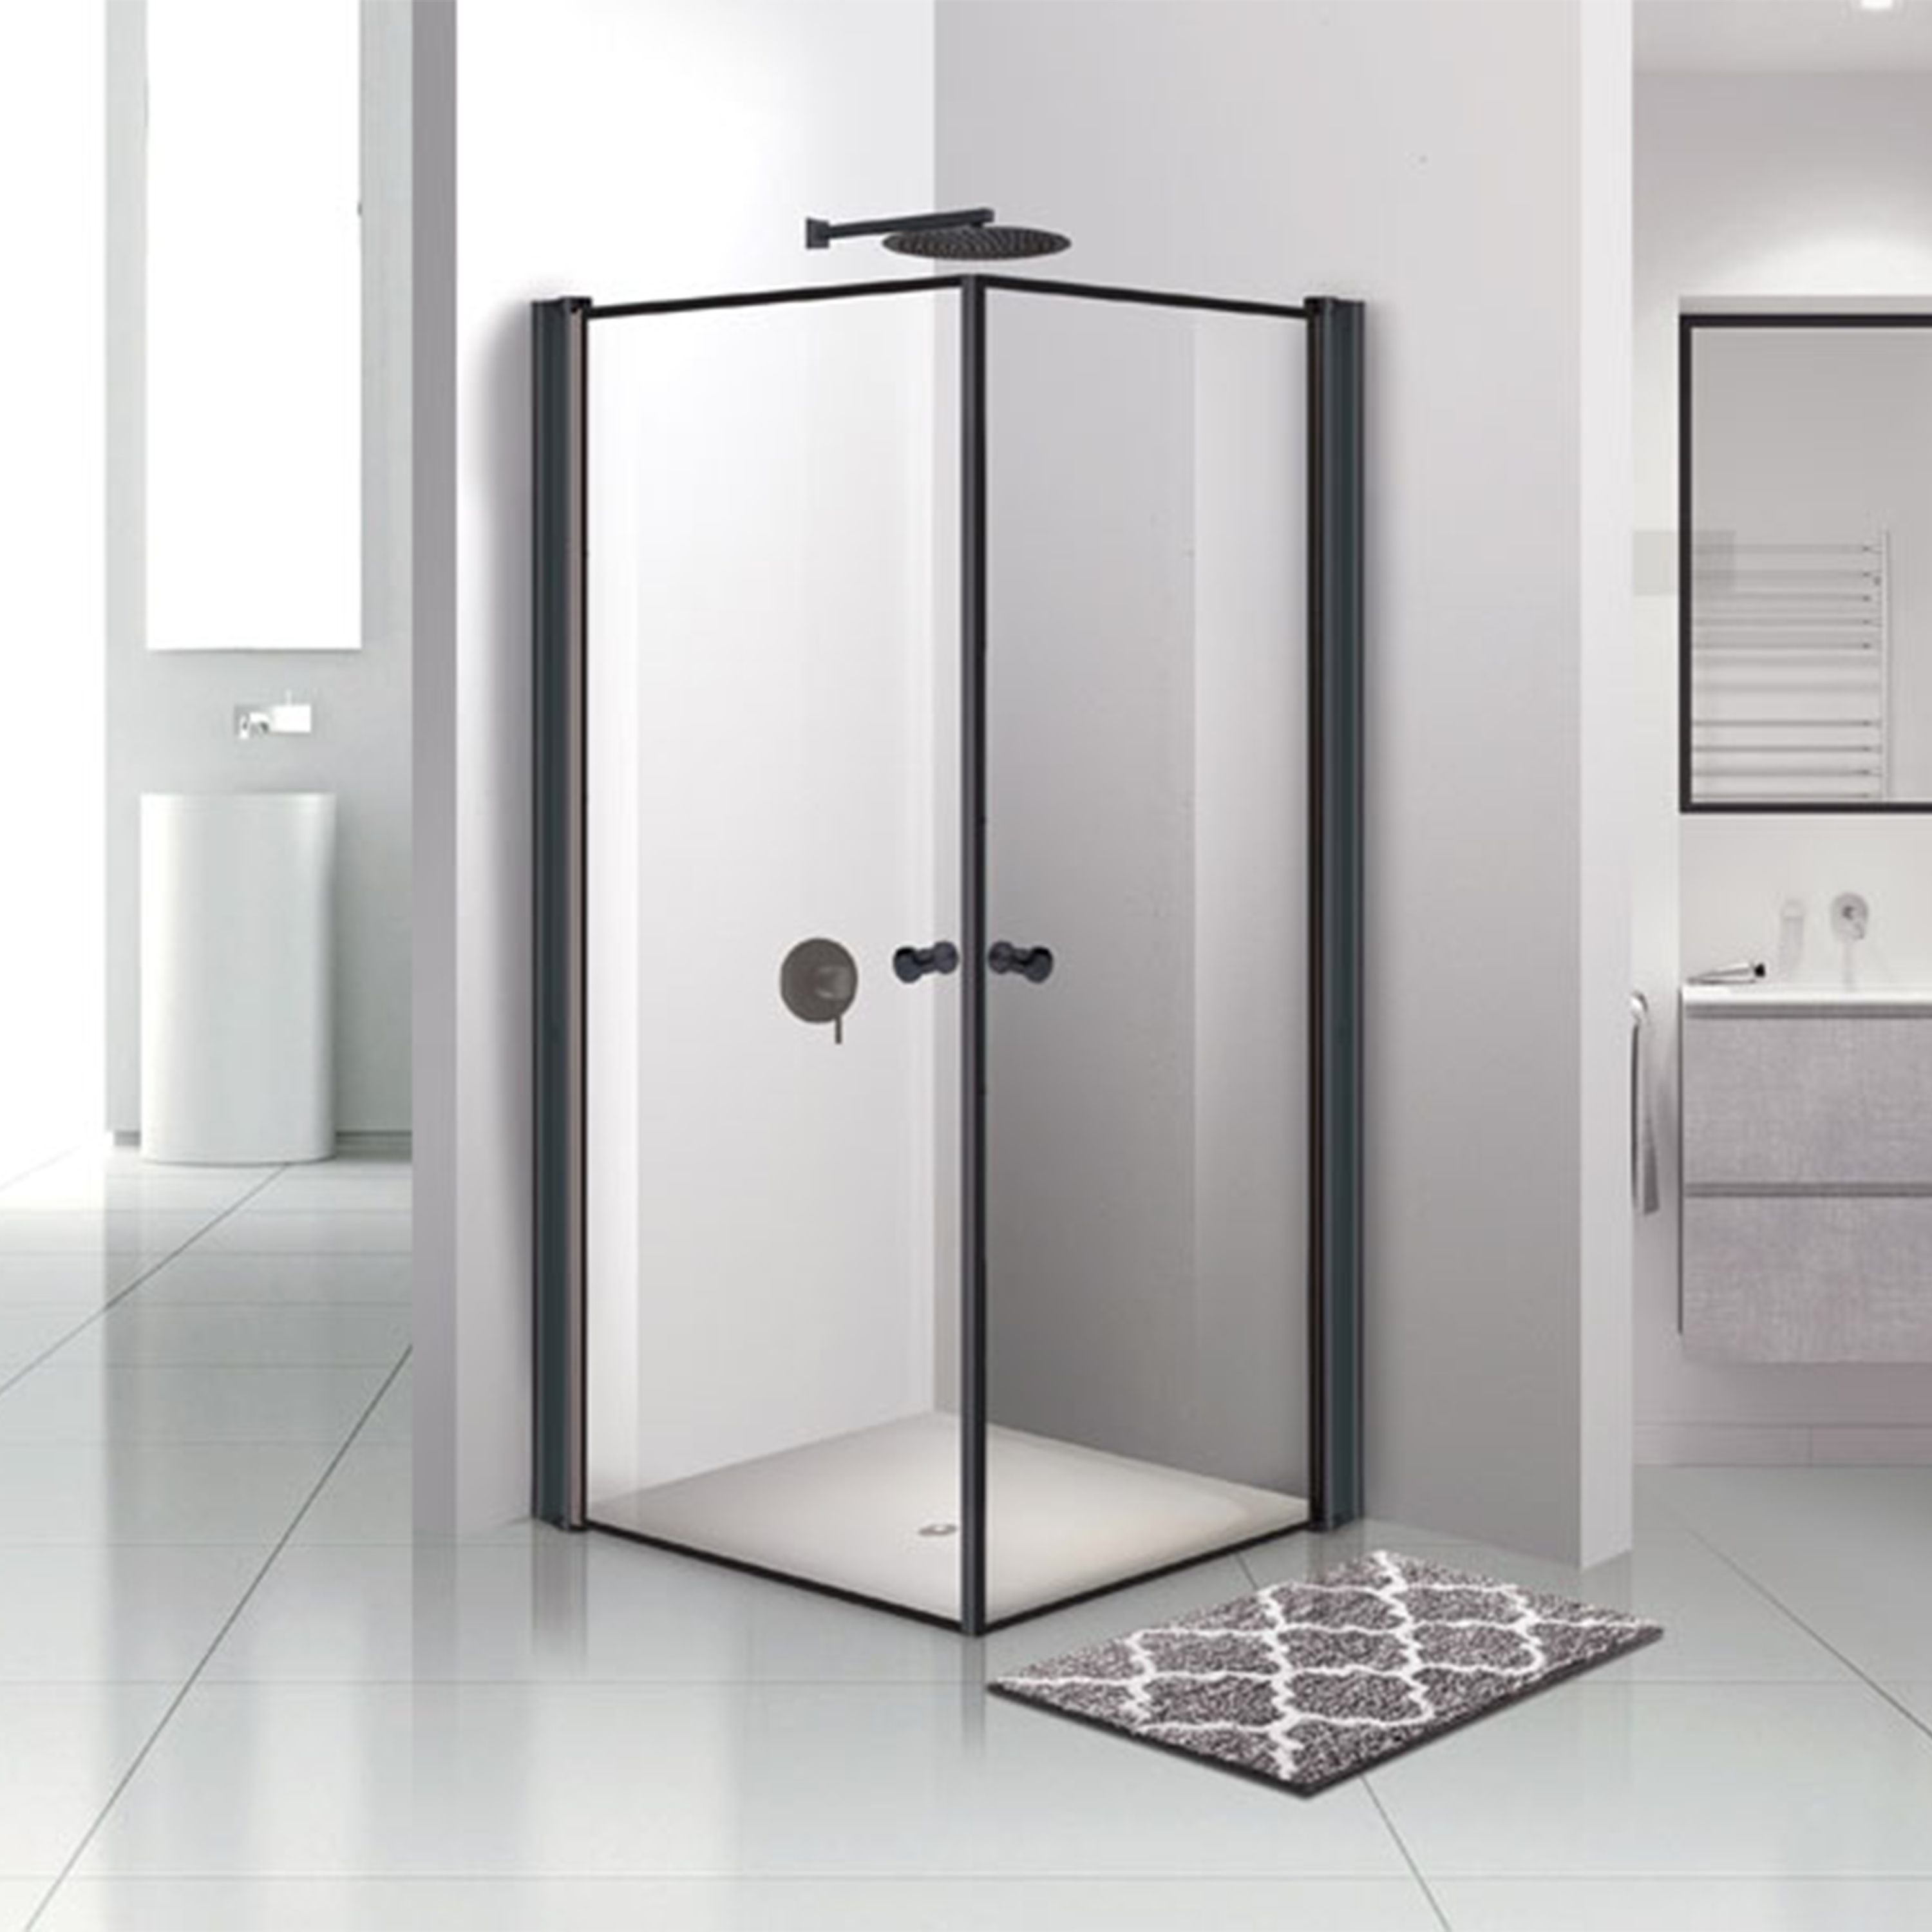 מקלחון פרזול זכוכית שקופה 77-80 ס"מ 405 Matina - צבע שחור אחריות לשלוש שנים ע"י היבואן הרשמי